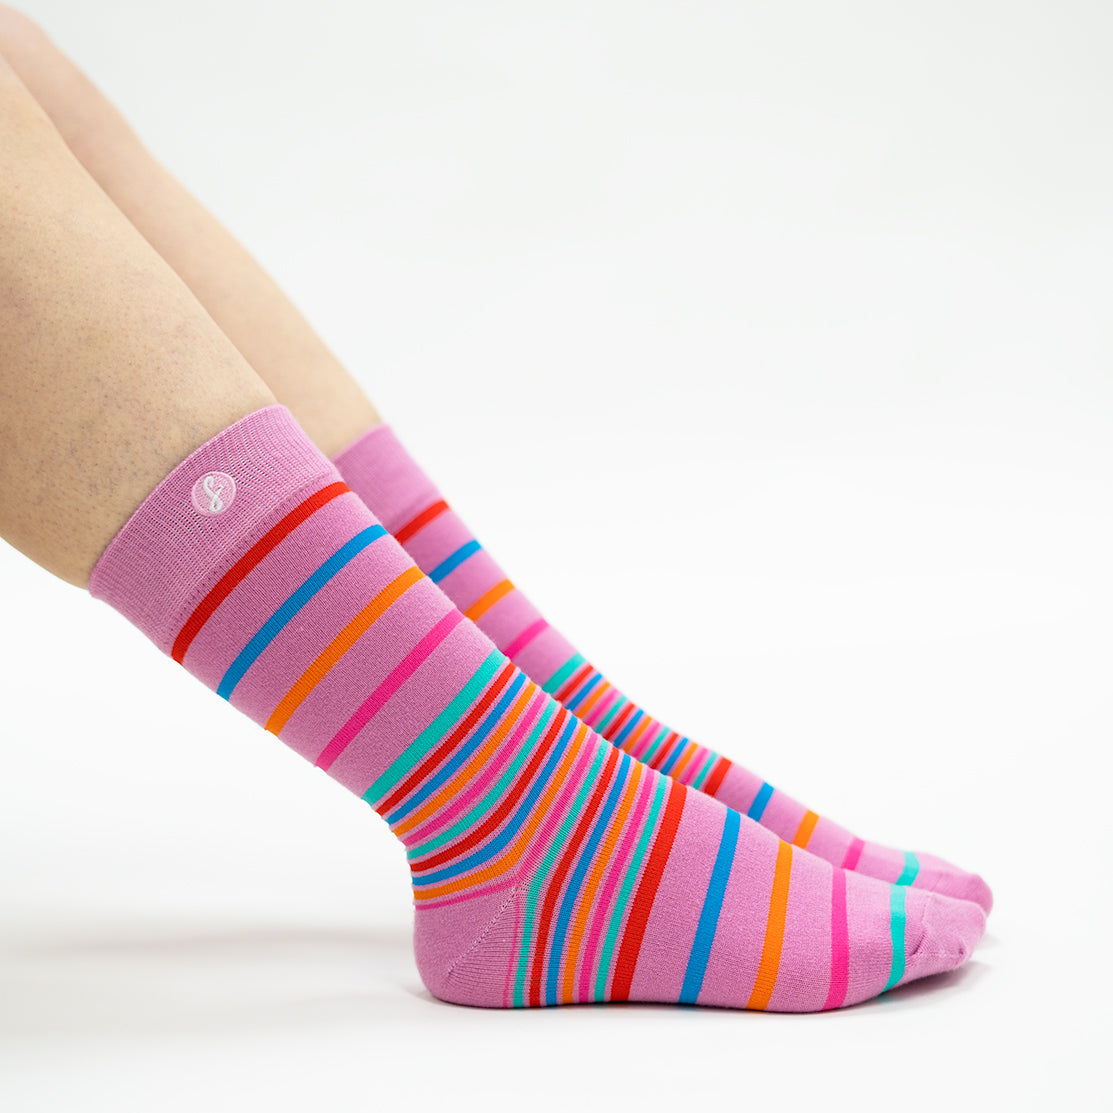 Colourful 5 Pack Cosmopolitan Merino Wool Swanky Socks